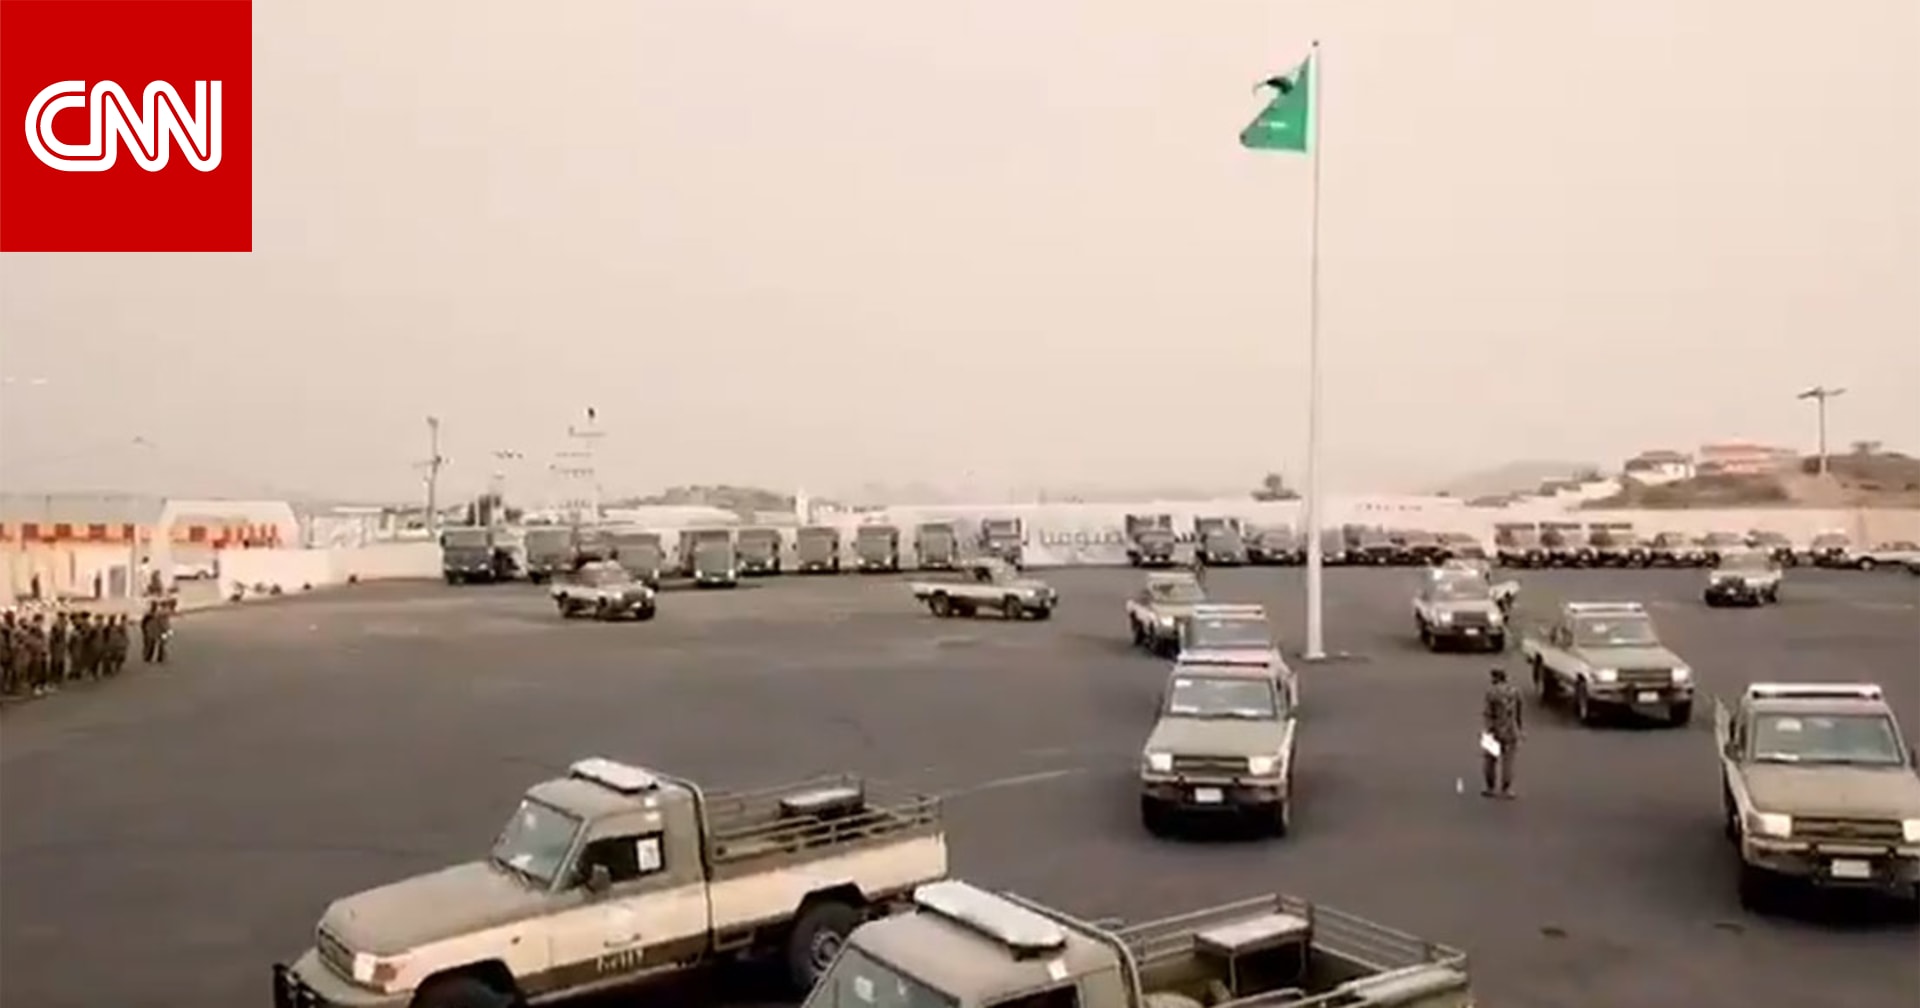 دوريات  أفواج أمنية  بجازان في السعودية.. ما دورها؟ - CNN Arabic